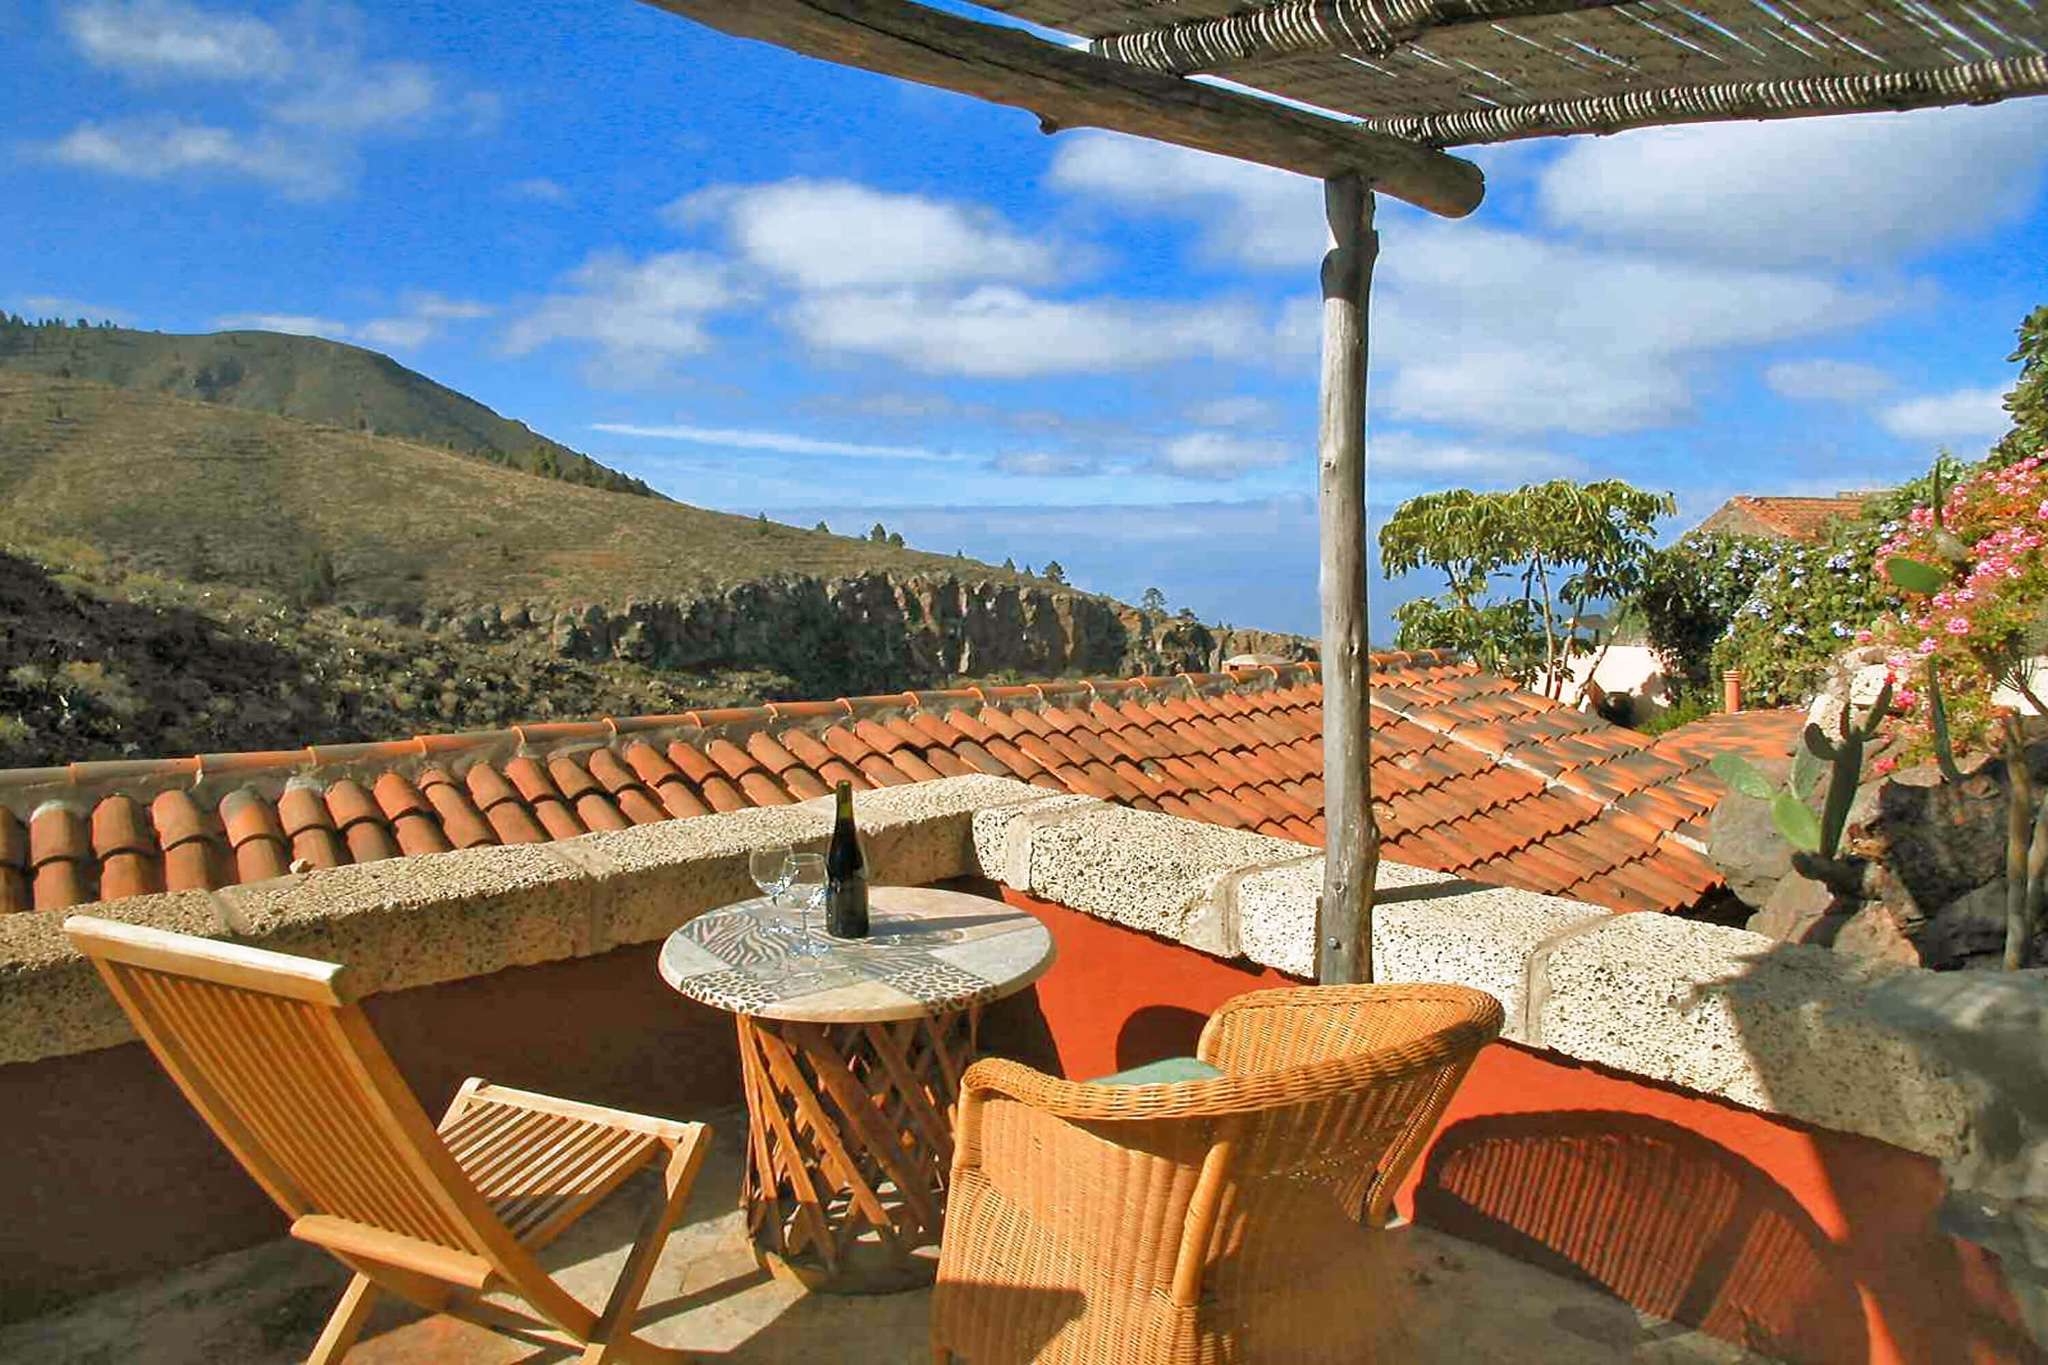 Pěkný rekreační dům s komunálním bazénem pro dovolenou v přírodě, obklopené nádhernou scenérii Tenerife